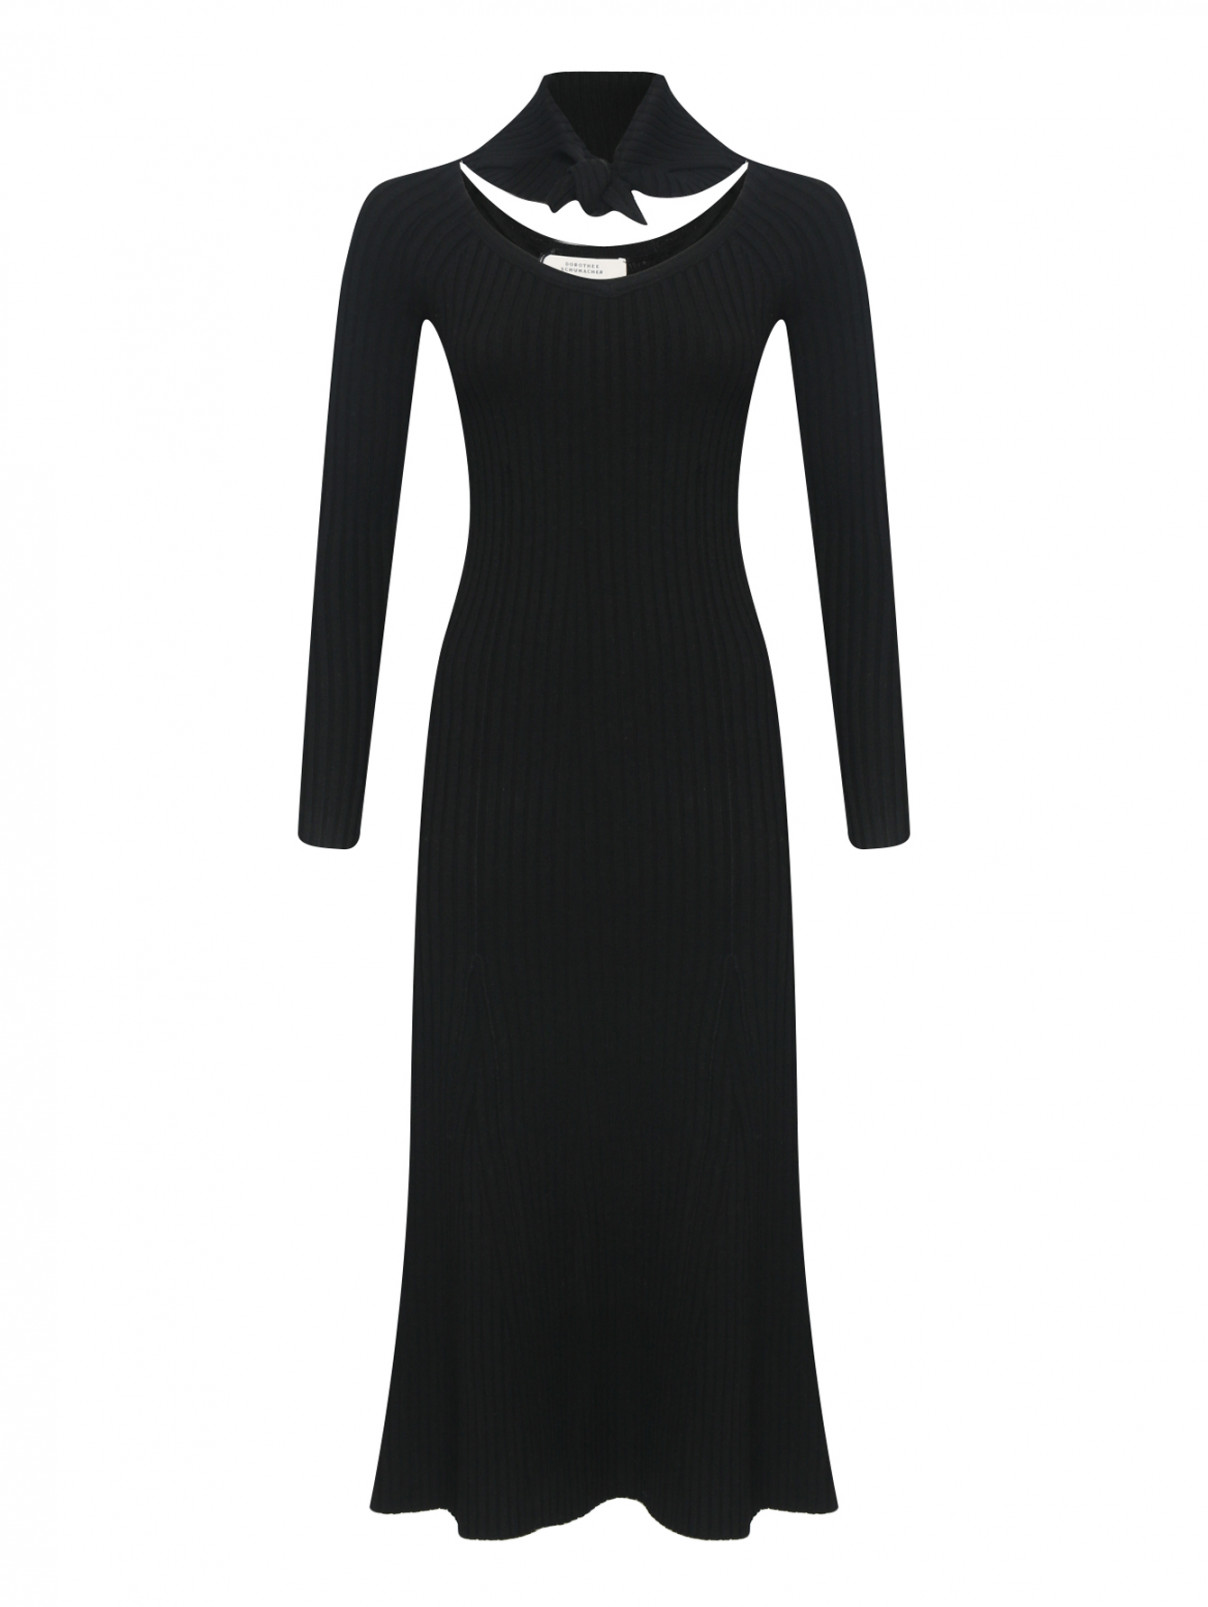 Трикотажное платье-миди в рубчик Dorothee Schumacher  –  Общий вид  – Цвет:  Черный